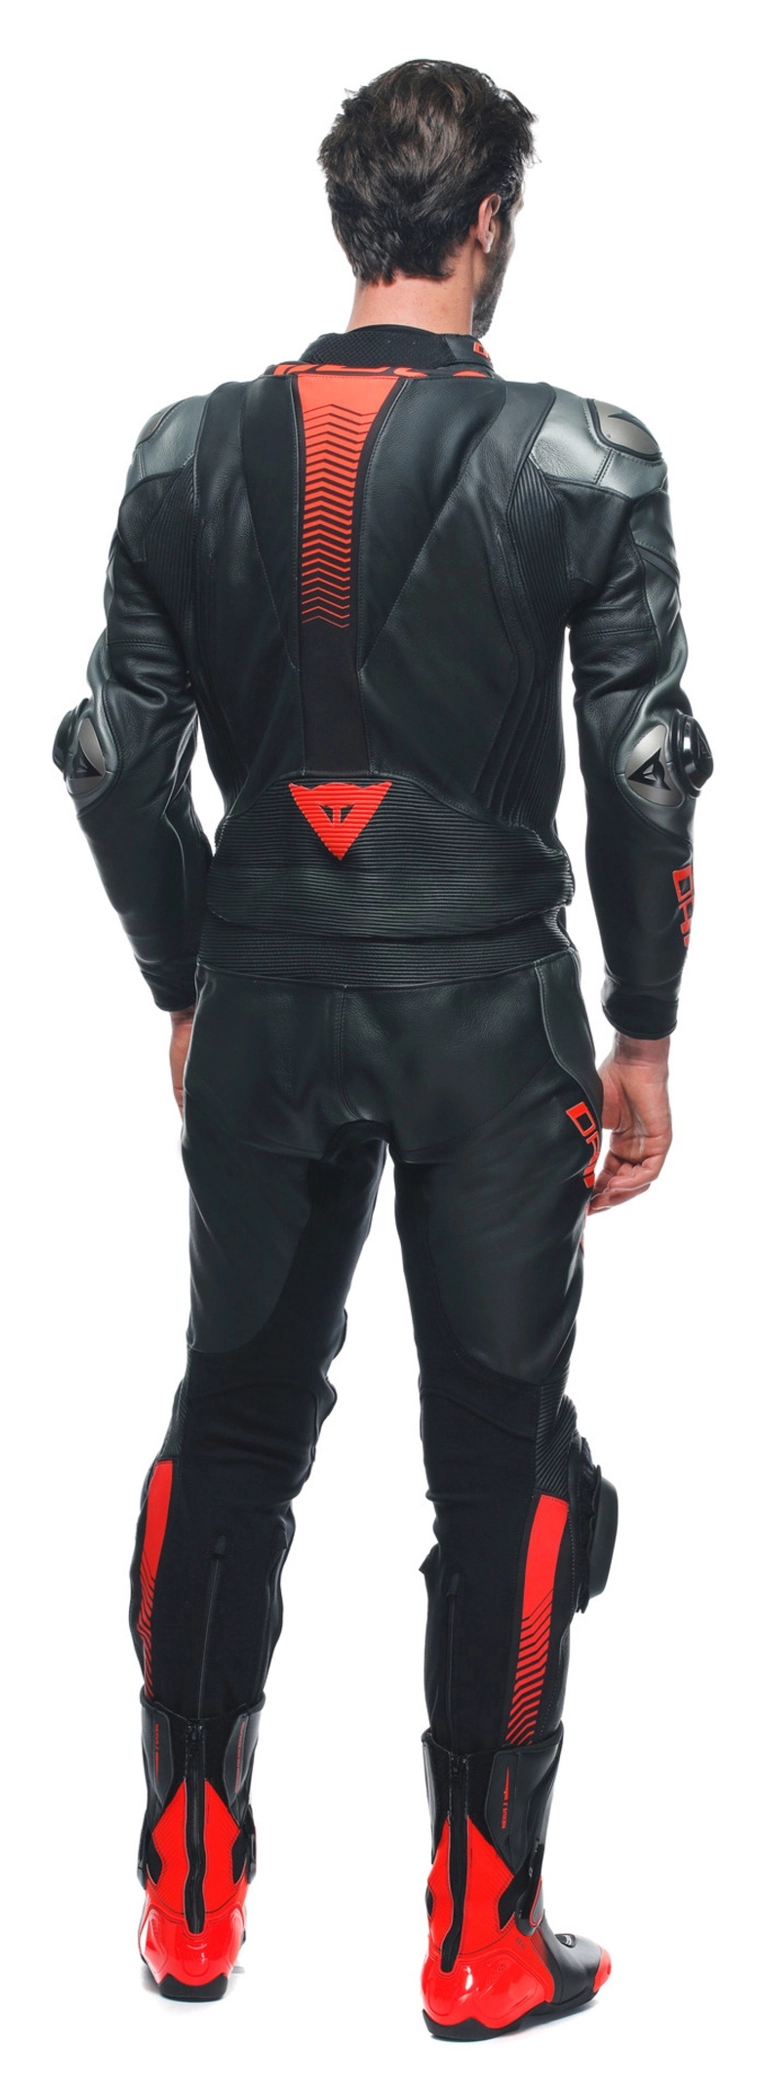 Dainese Laguna Seca 5 Leather Suit Black